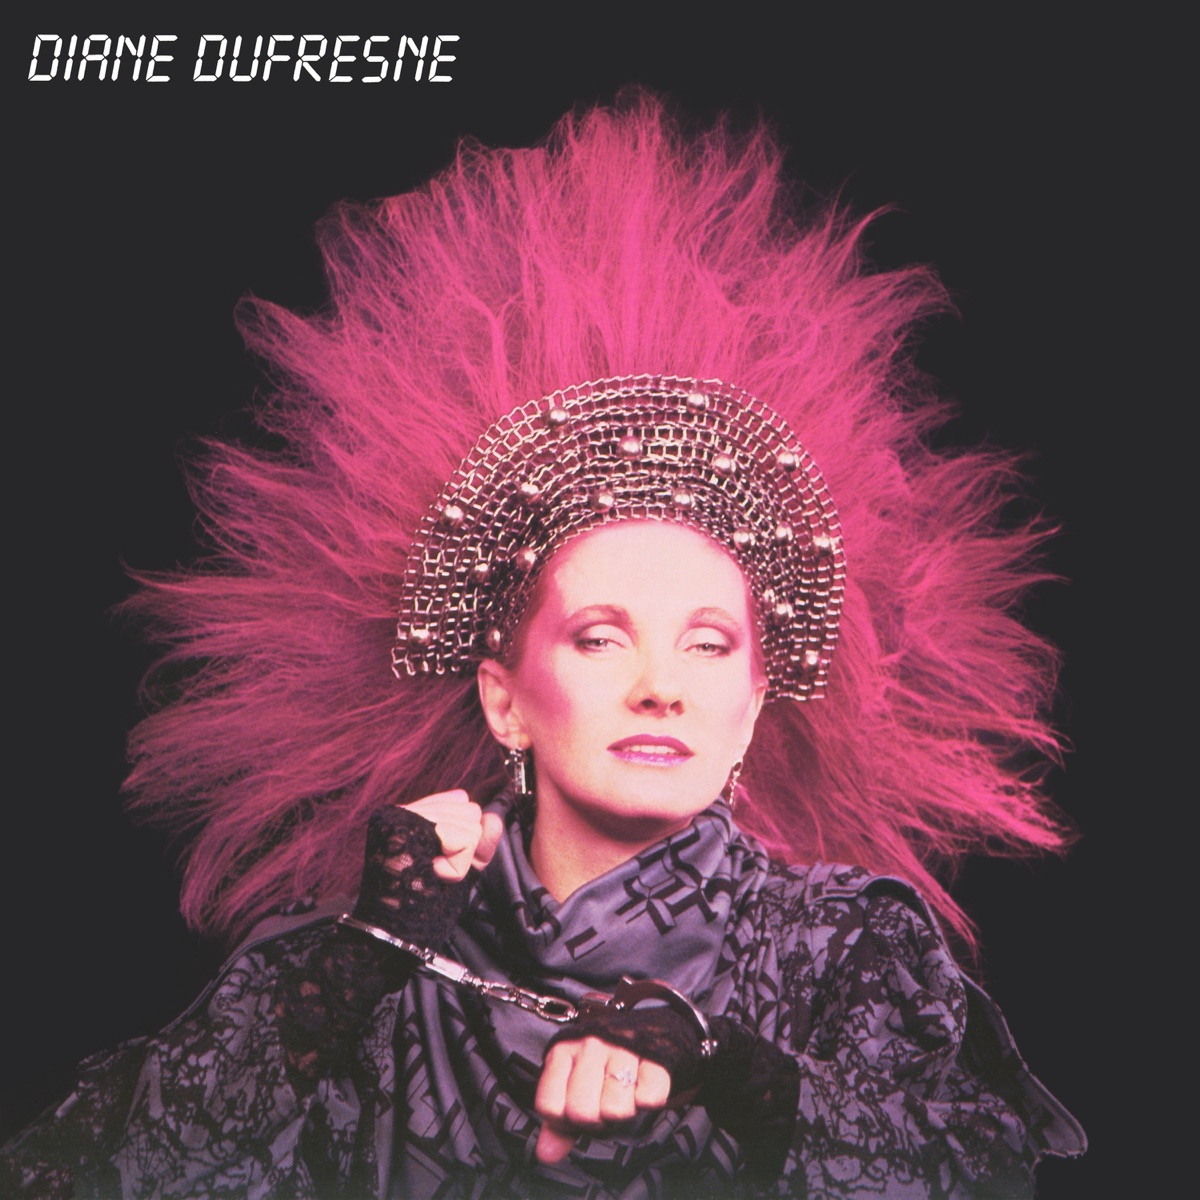 Diane Dufresne et les Violons du Roy - Album by Diane Dufresne - Apple Music